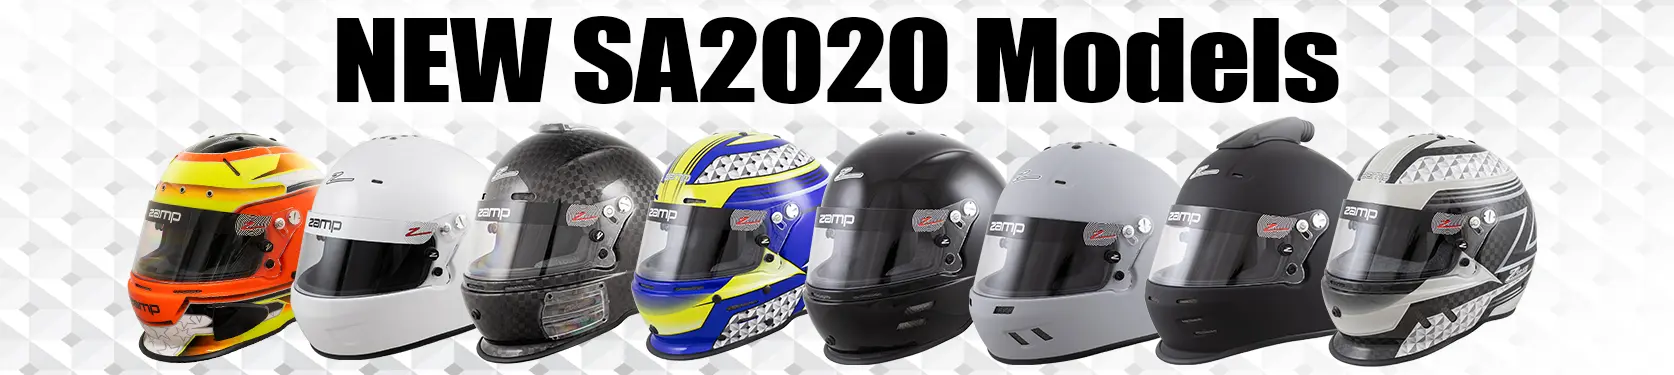 SA2020 Helmets